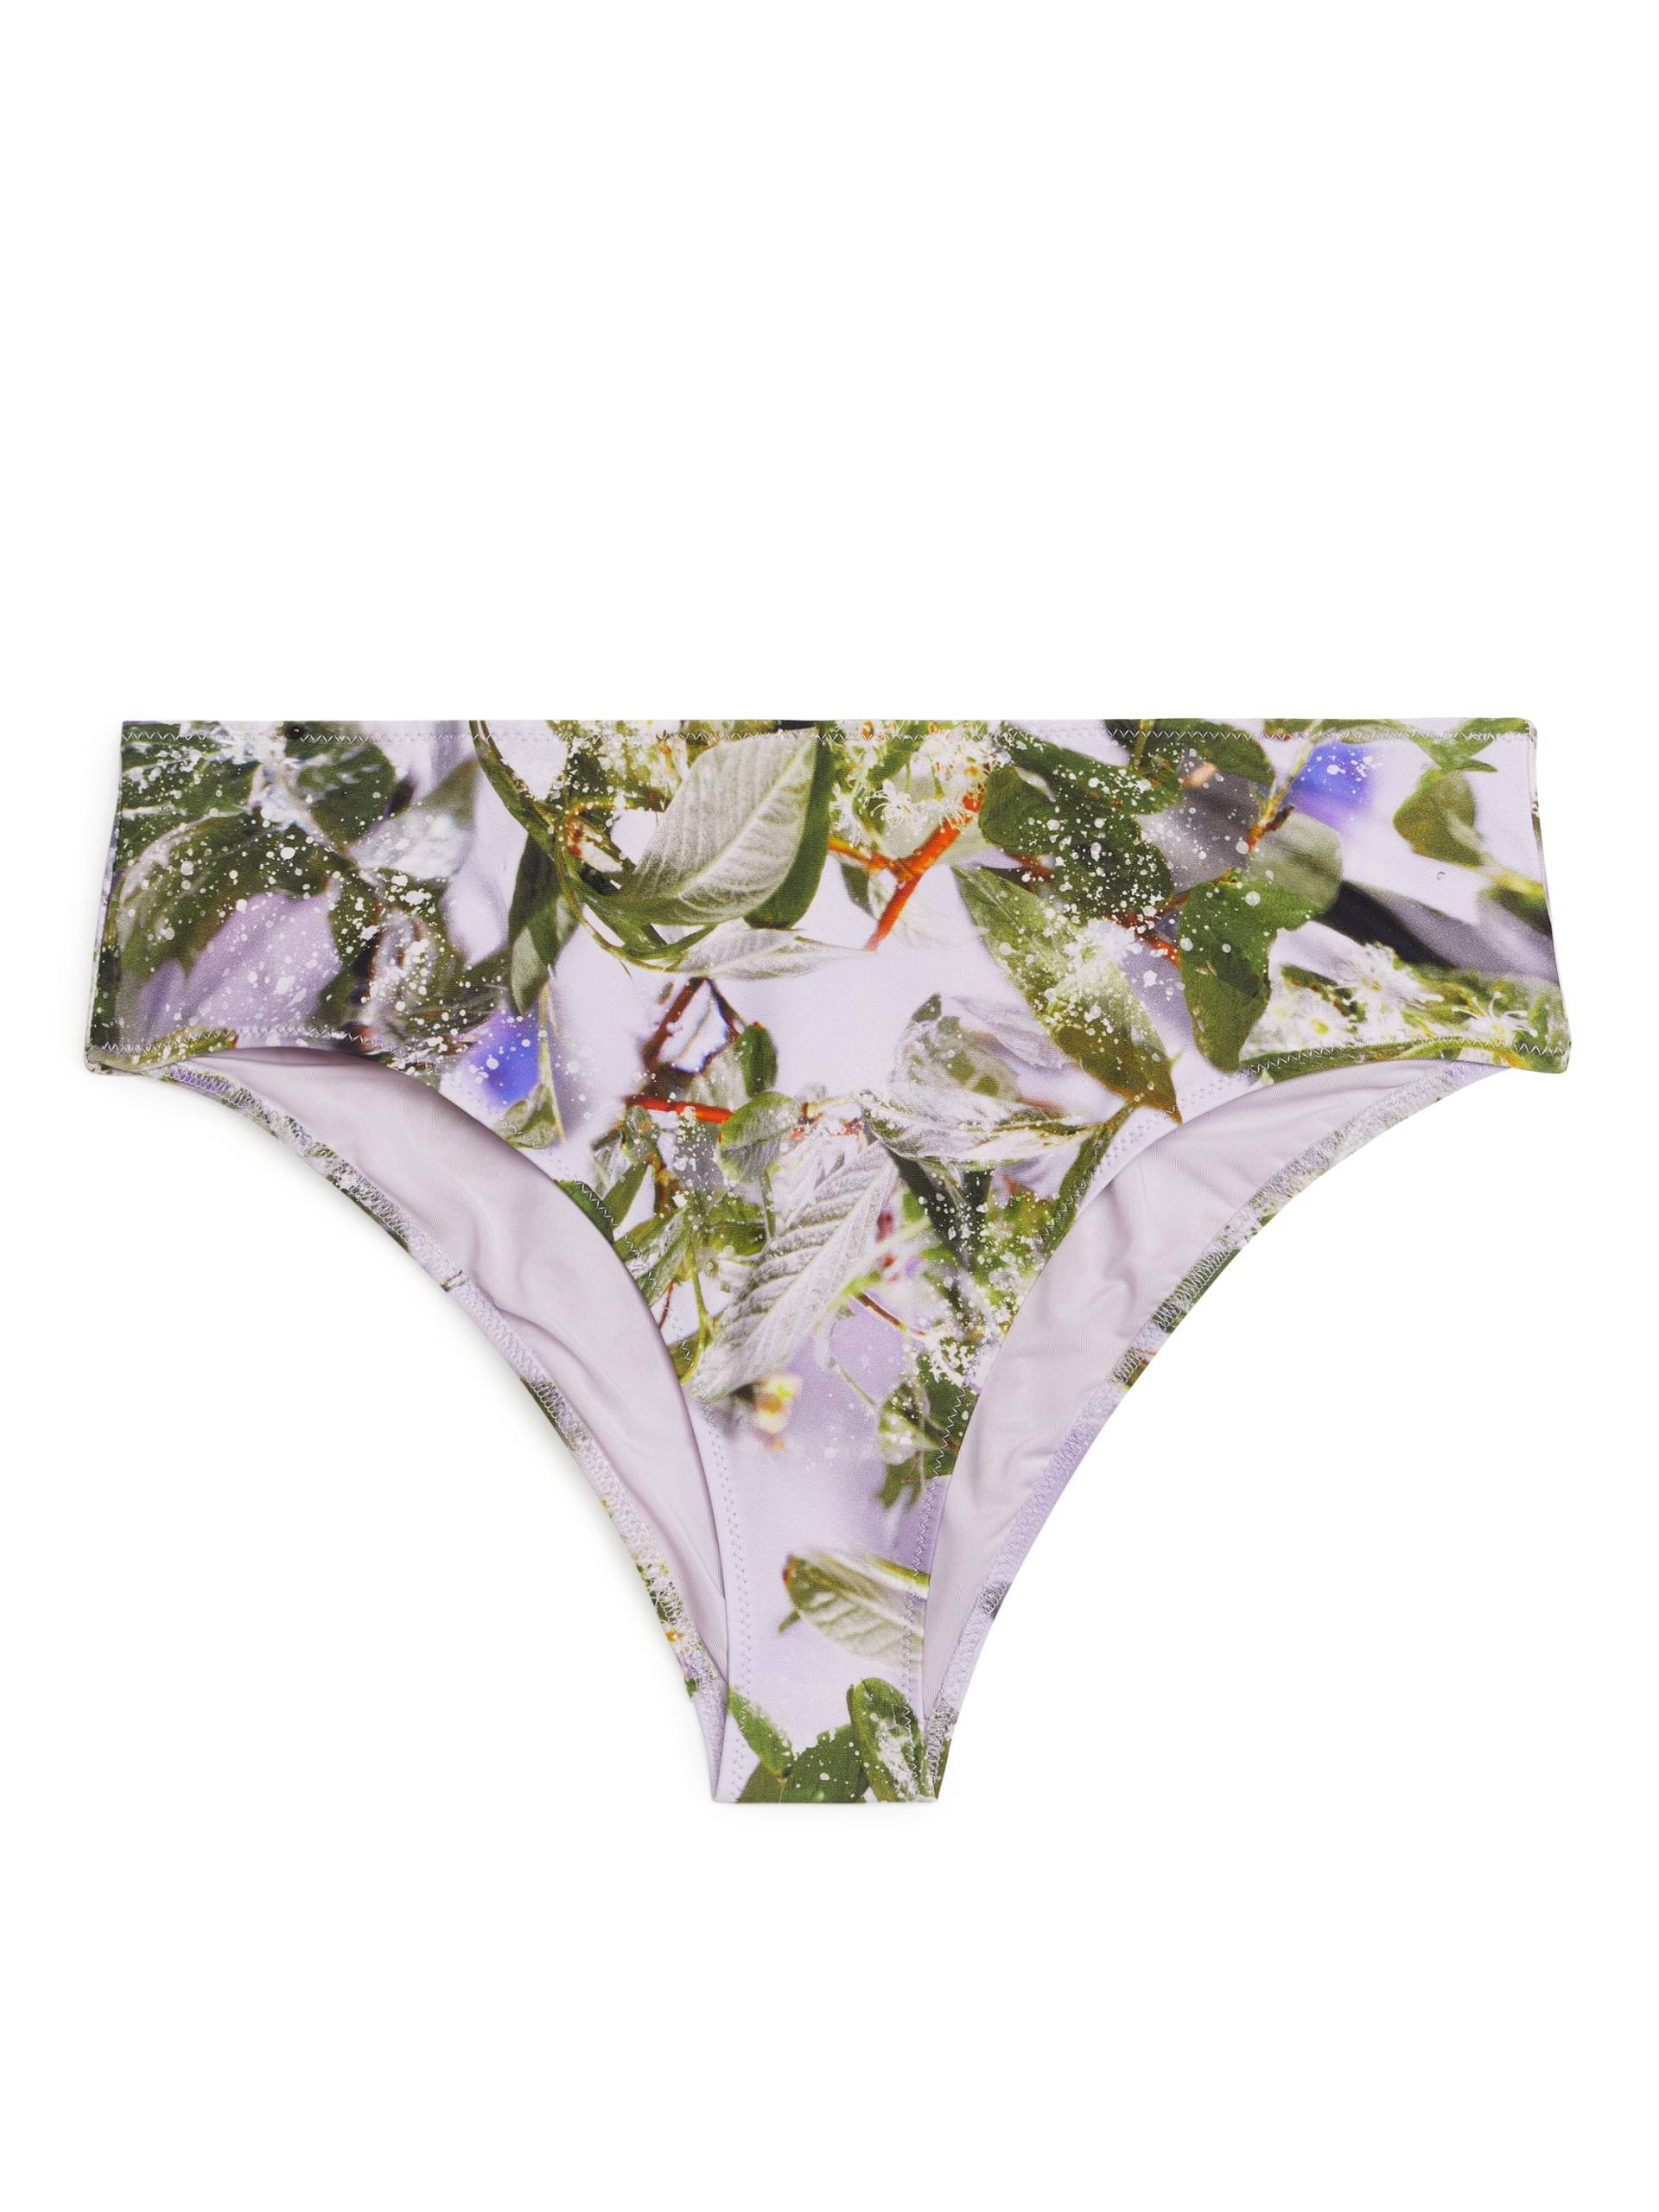 Arket Bikinihöschen mit Slowflower-Print Flieder/Blüten, Bikini-Unterteil in Größe 34. Farbe: Lilac/floral von Arket